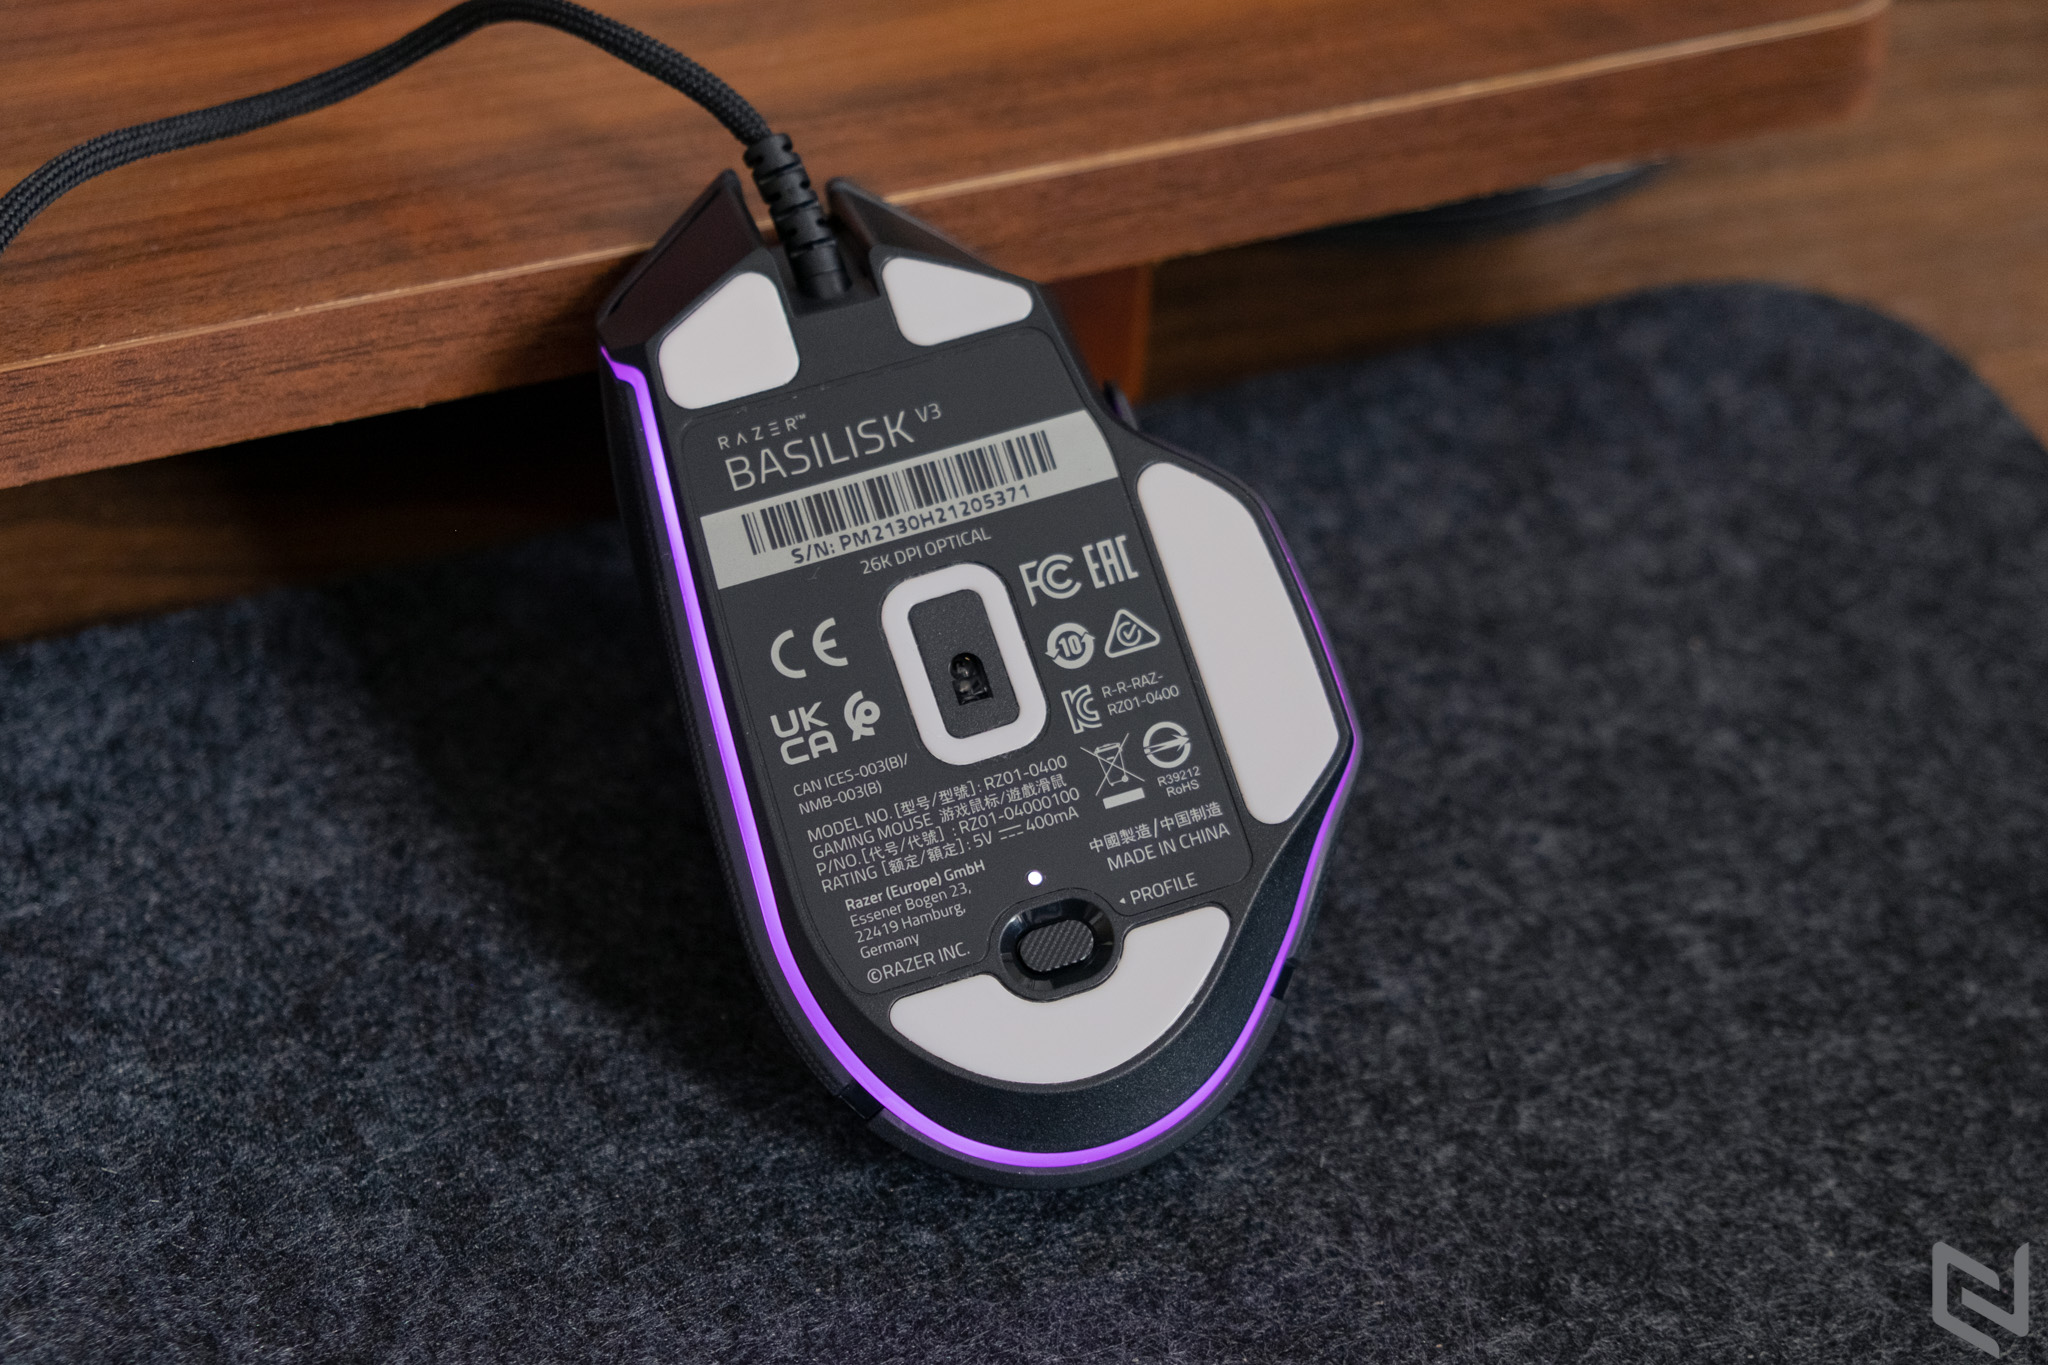 Đánh giá chuột chơi game Razer Basilisk V3: Hiệu năng khủng, hiệu ứng đèn LED đẹp, gần chạm ngưỡng hoàn mỹ